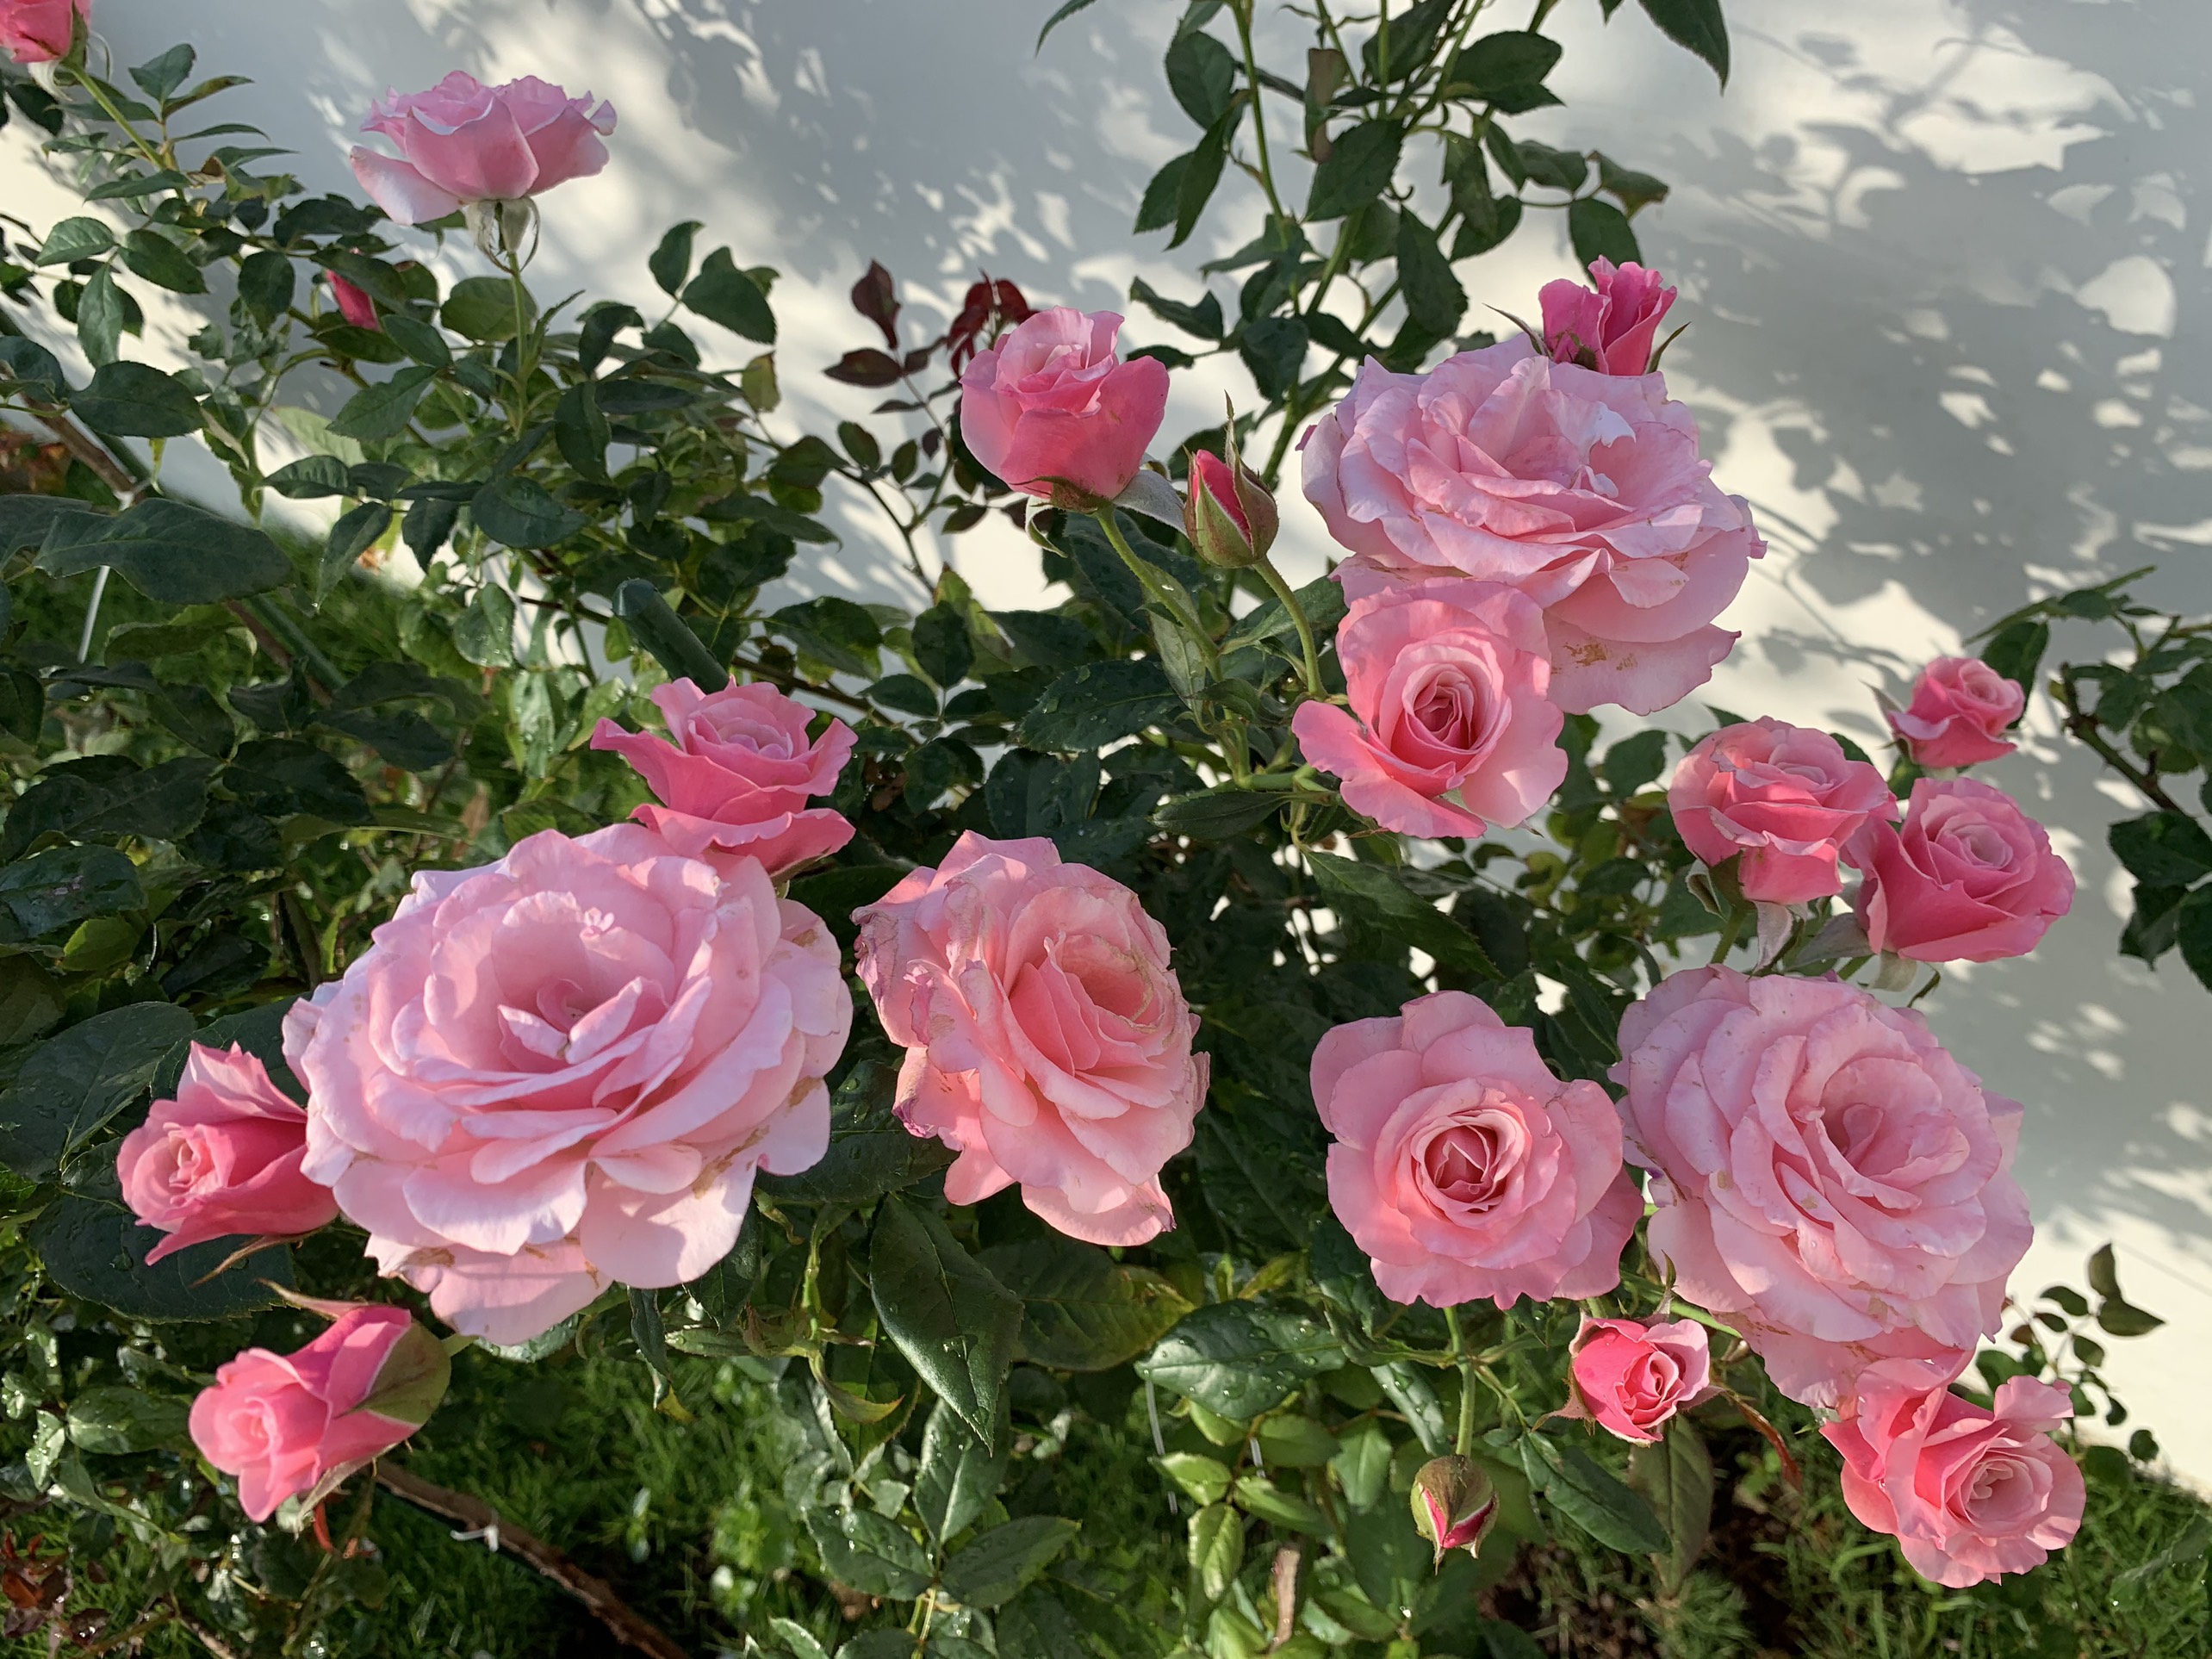 Rụng tim\' với vườn hoa hồng đẹp mê mệt của người mẹ trẻ